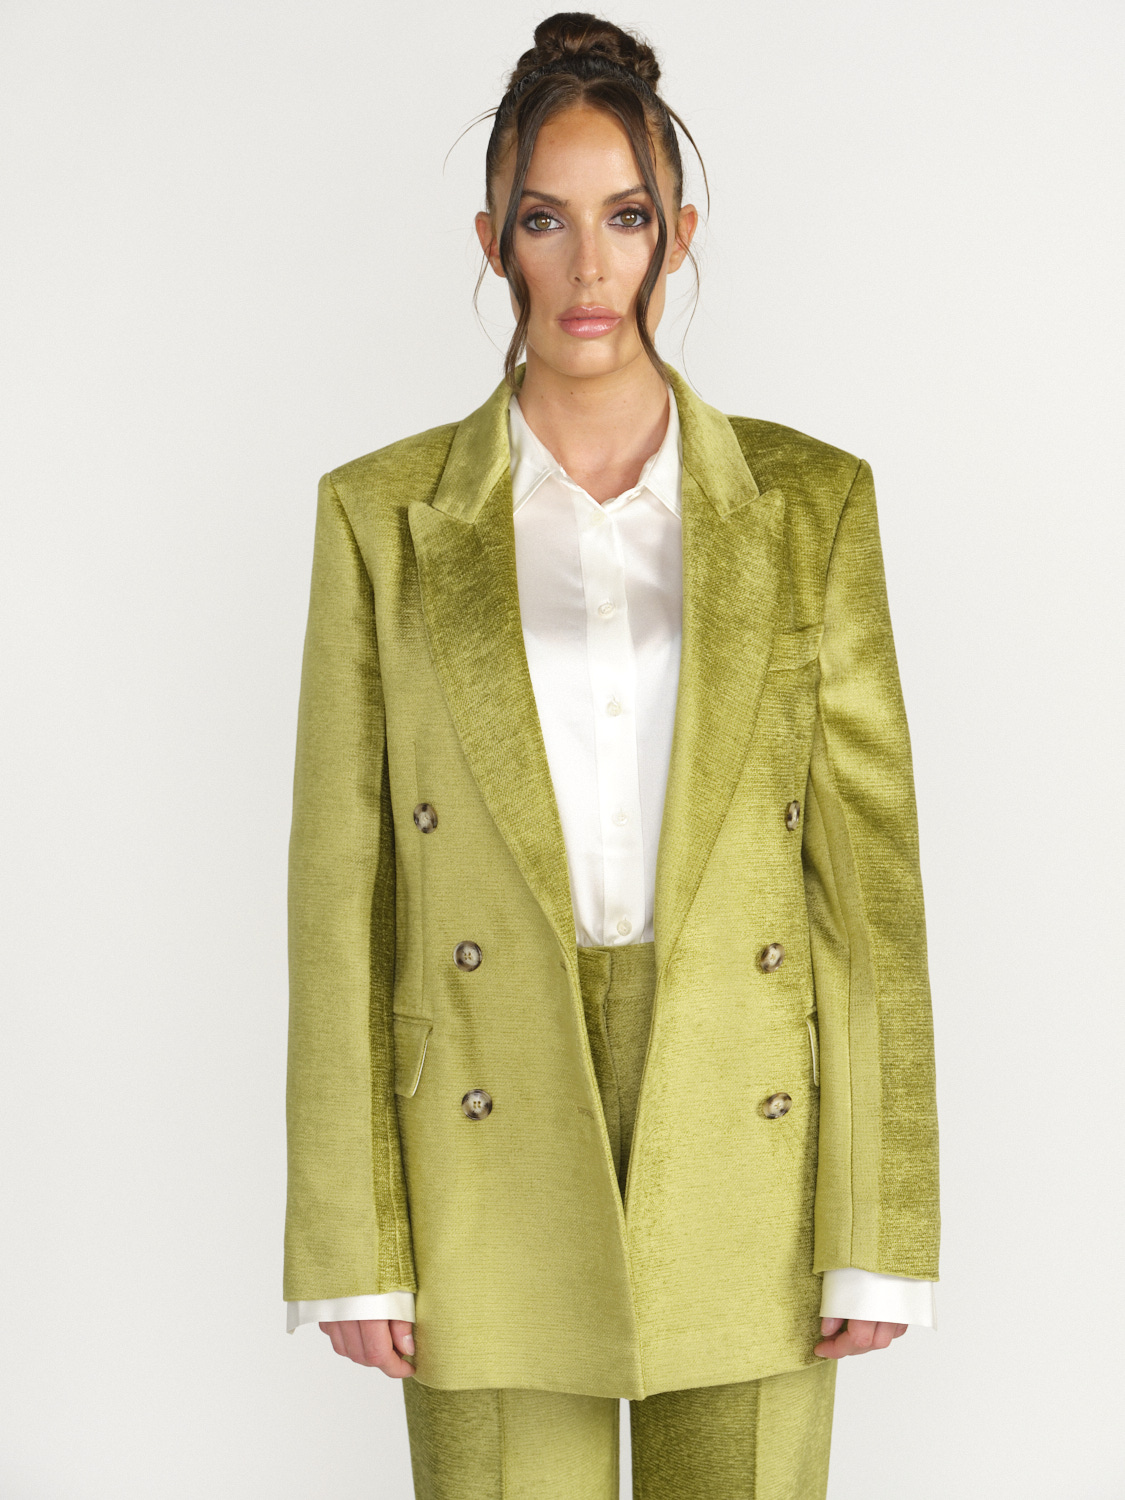 Victoria Beckham Lux Chenille Blazer - Double Breasted Blazer  green 38